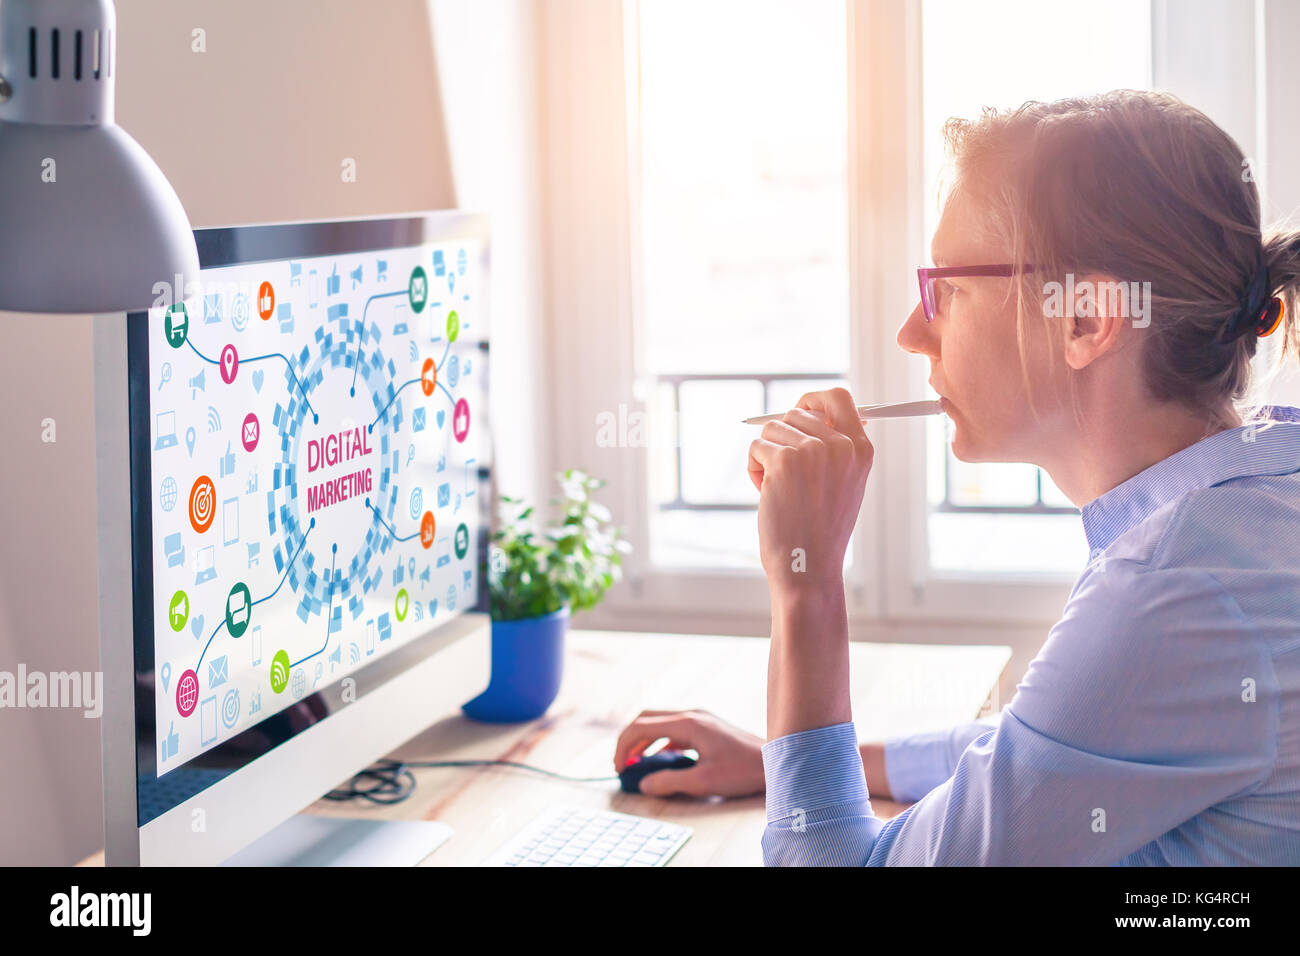 Femme à l'aide d'ordinateur avec digital marketing technologie concept à l'écran avec des icônes sur email et social media network advertising et analytics Banque D'Images